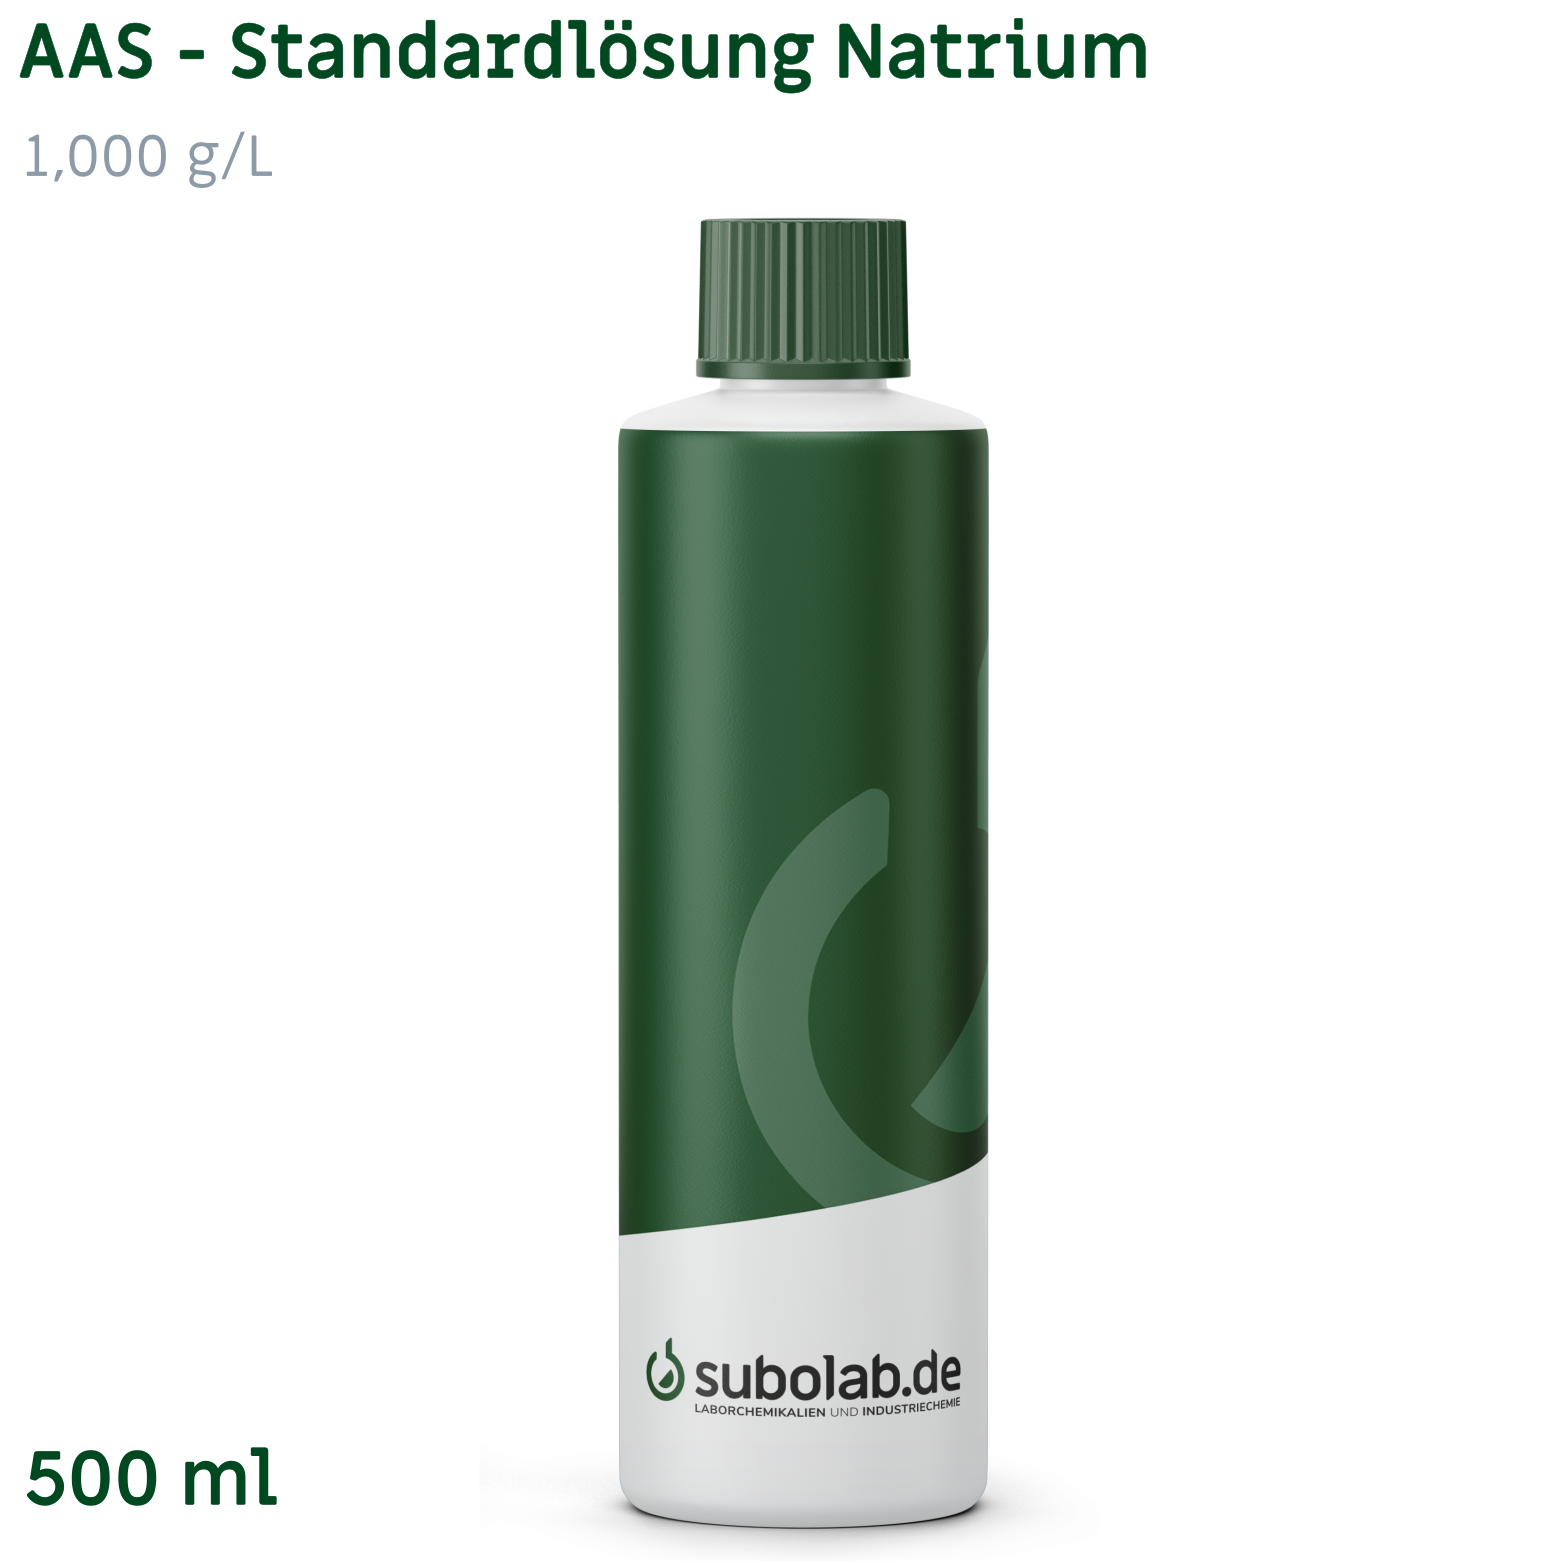 Bild von AAS - Standardlösung Natrium 1,000 g/L (500 ml)